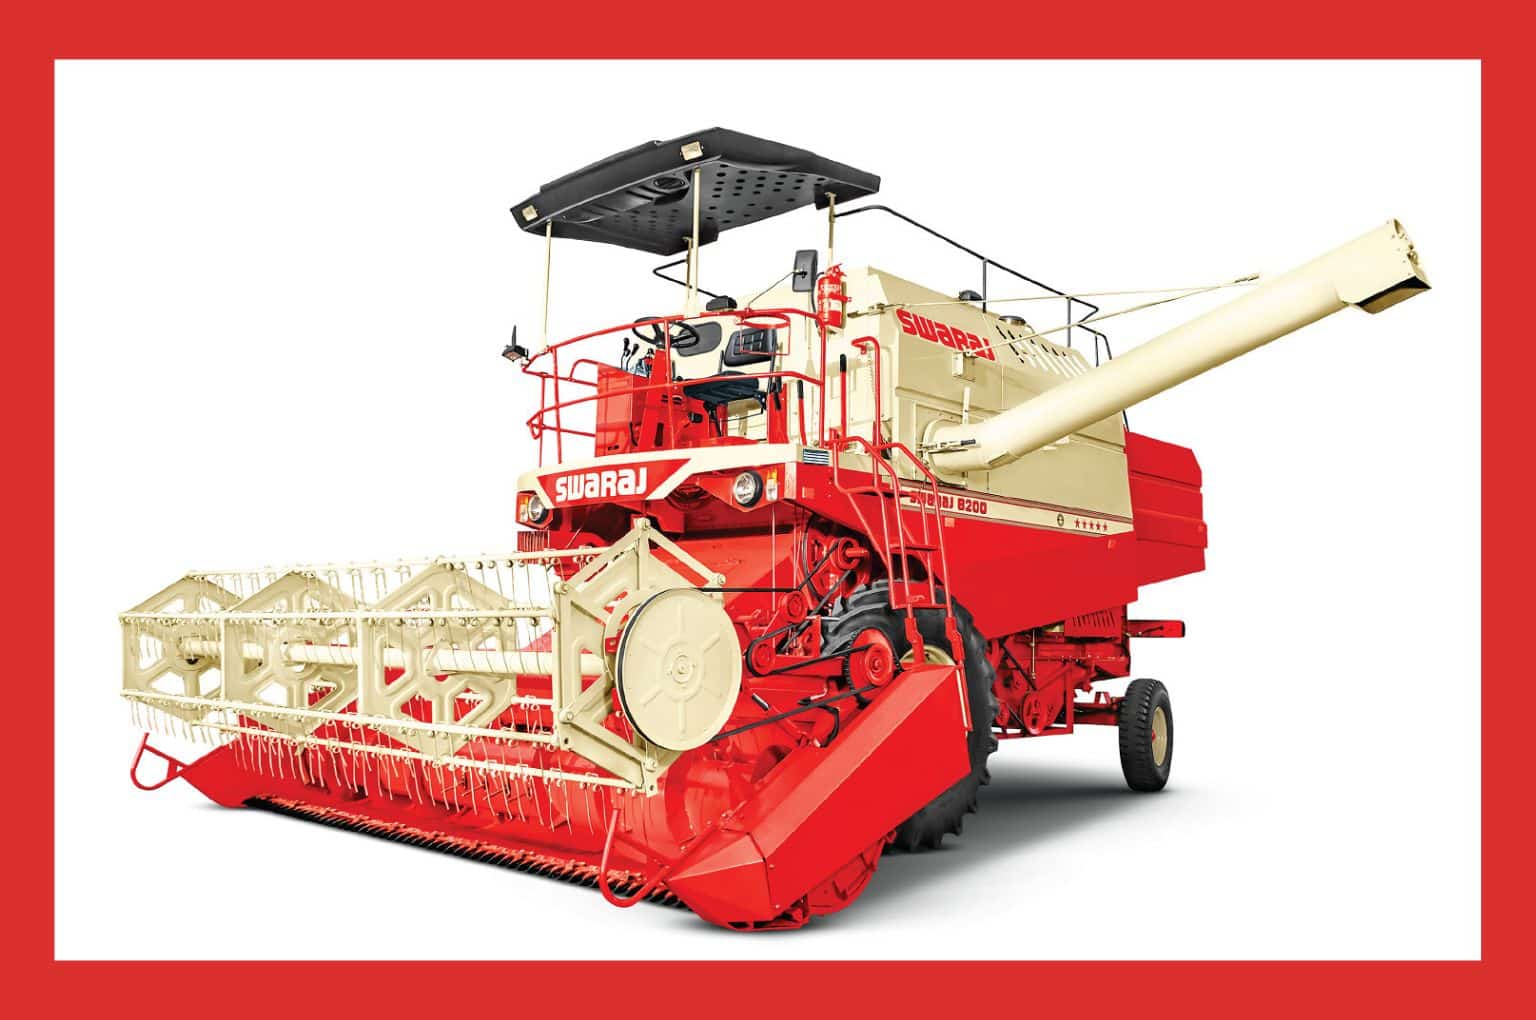 Swaraj 8200 wheel harvester